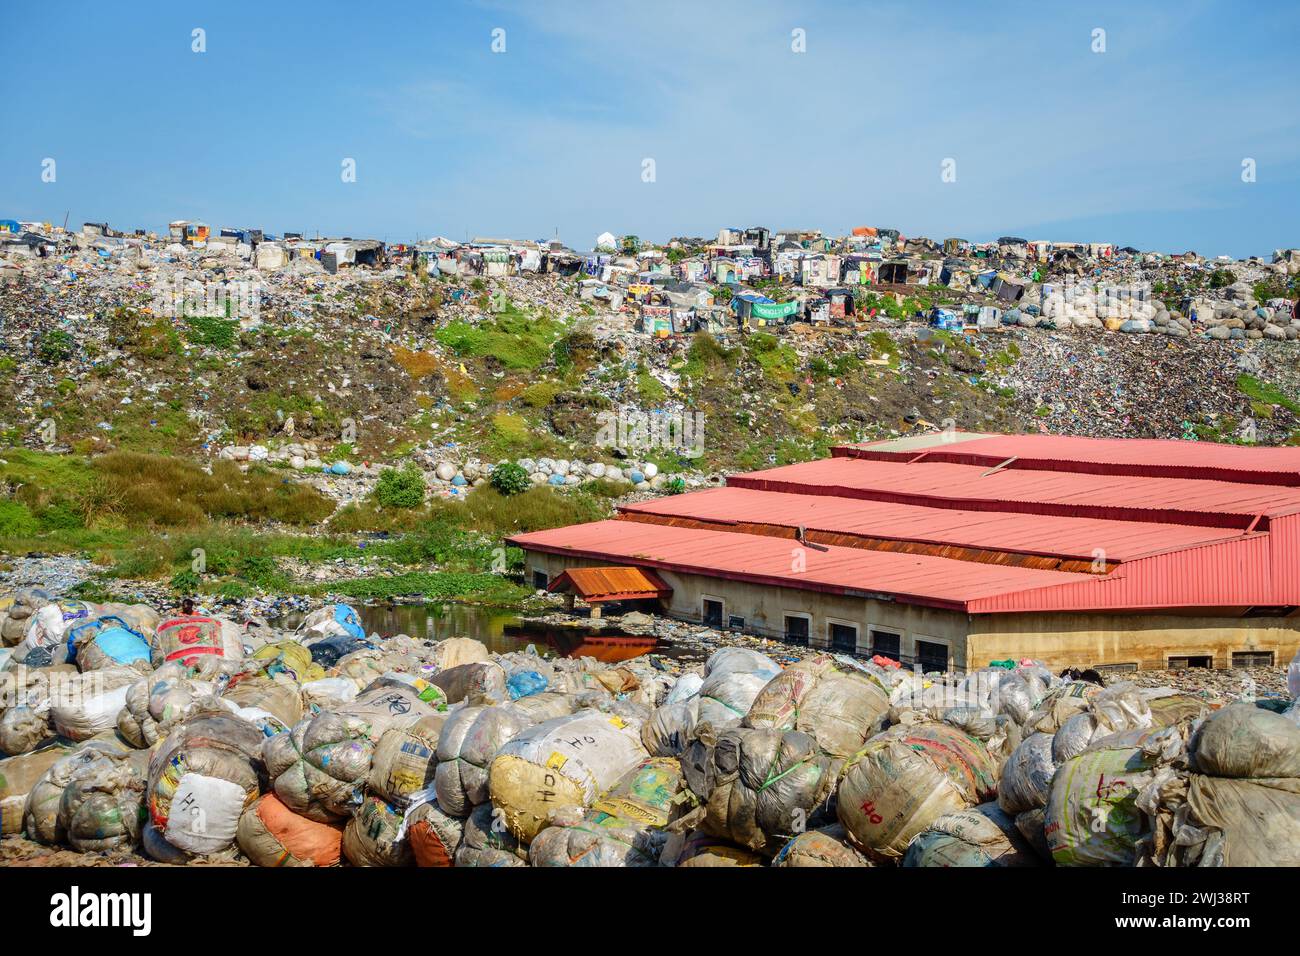 Lagos, Nigeria, 22. November 2019: Menschen leben und sammeln durch Müll auf einer Mülldeponie in Lagos, Nigeria Stockfoto